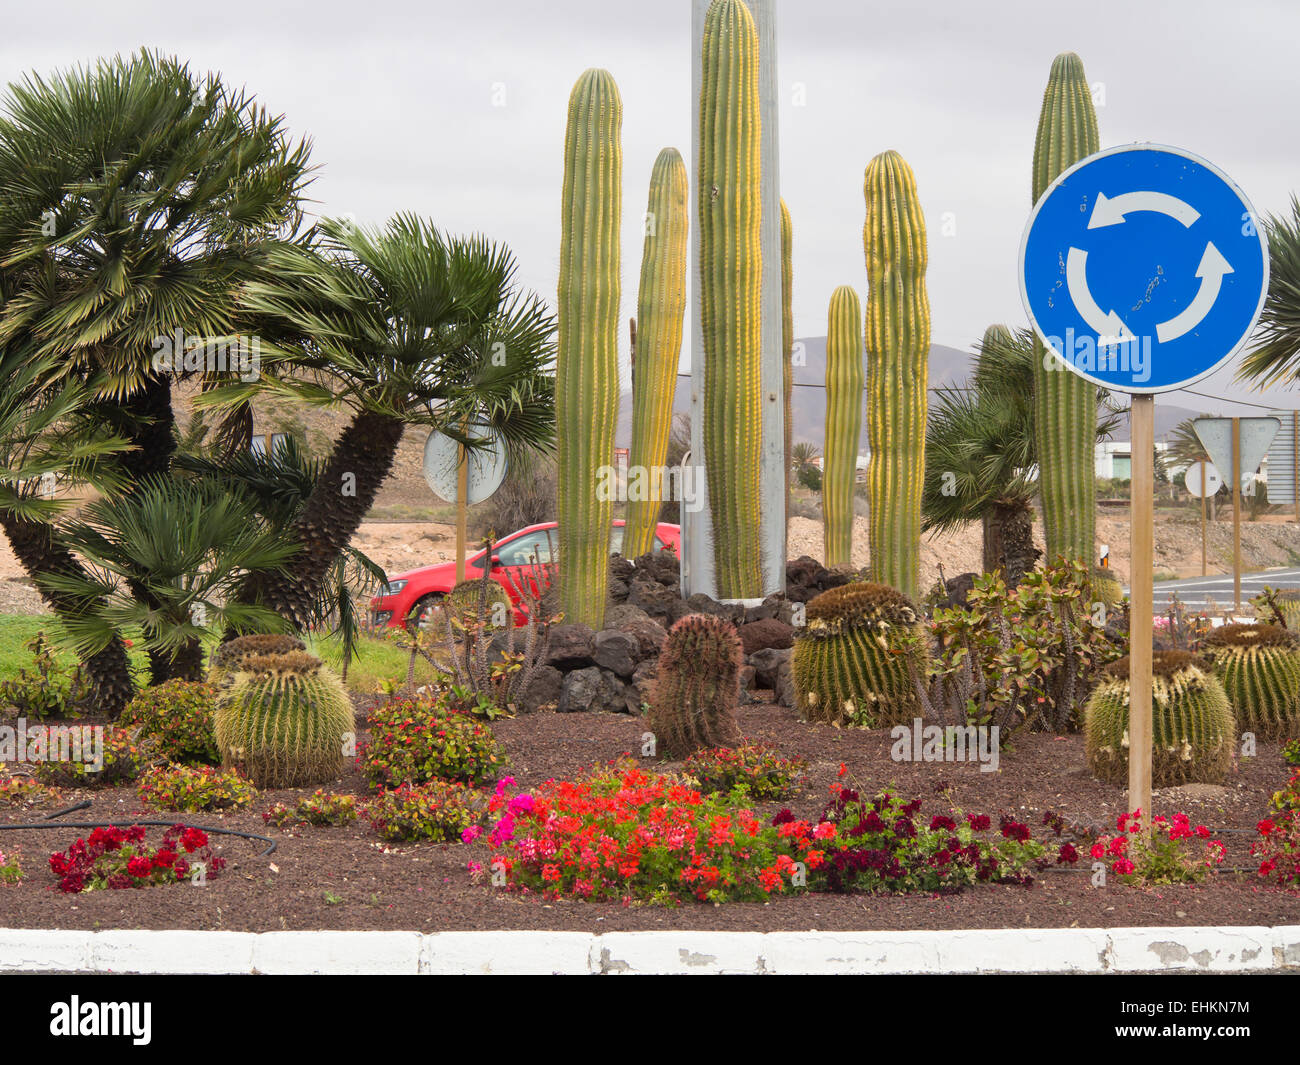 Kreisverkehr mit Verkehrszeichen, Kakteen, Blumen und Palmen Bäume Fuerteventura, Kanarische Inseln-Spanien Stockfoto